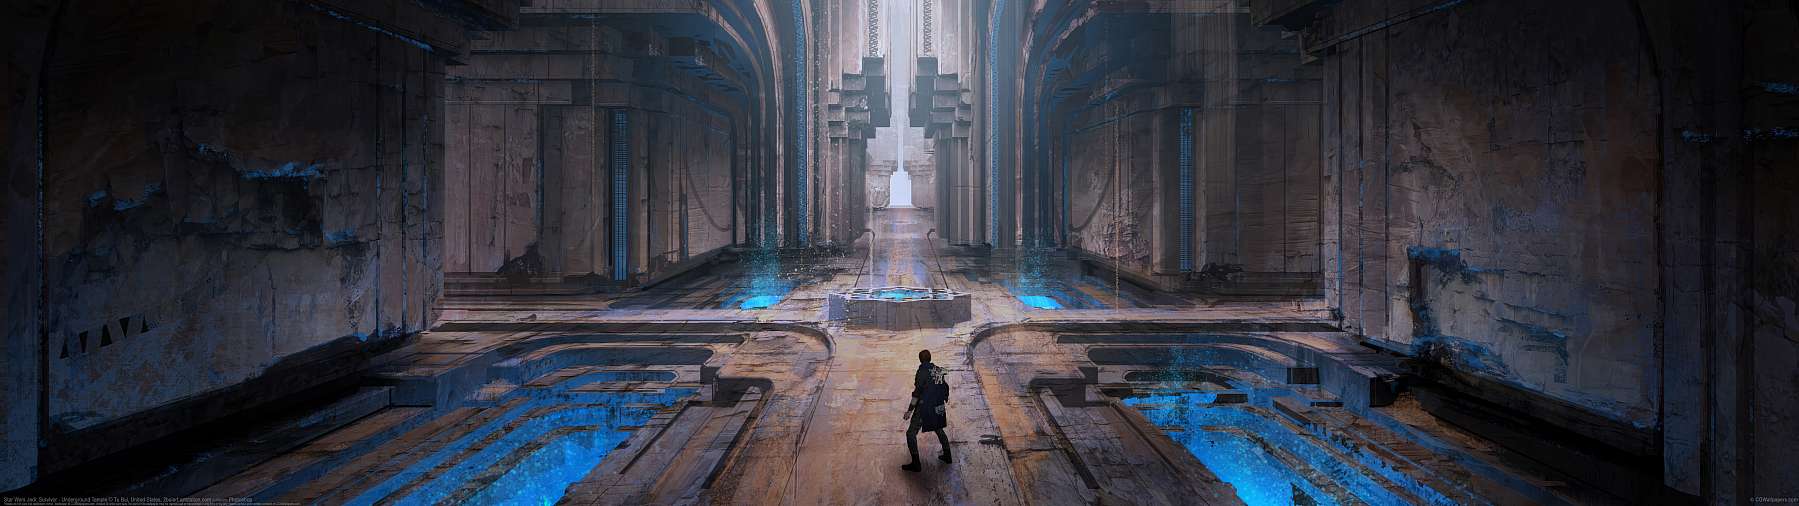 Star Wars Jedi: Survivor - Underground Temple ultrawide wallpaper